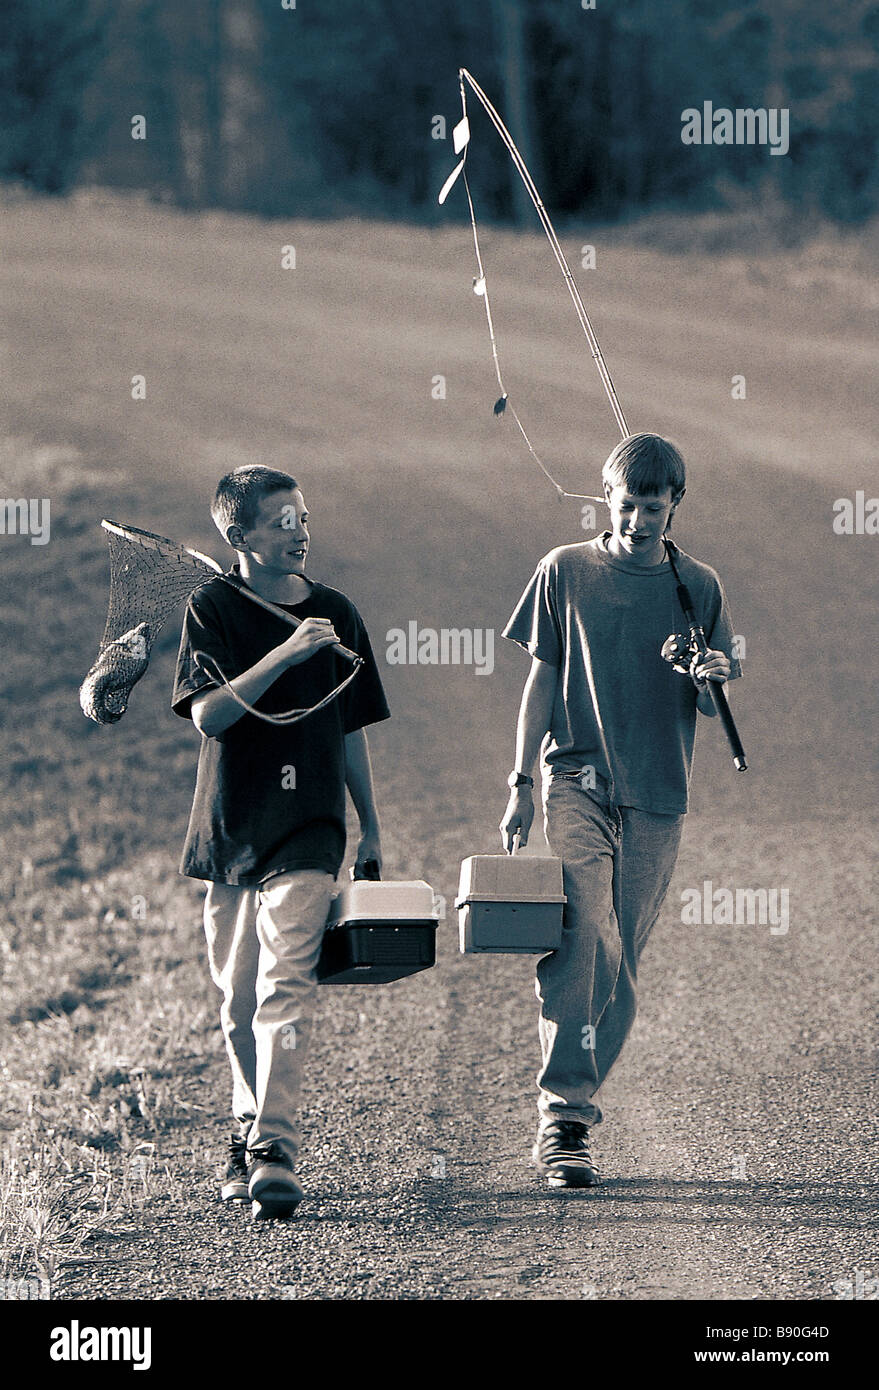 FL2837, DARWIN WIGGETT; Two boys walking fishing gear Stock Photo - Alamy